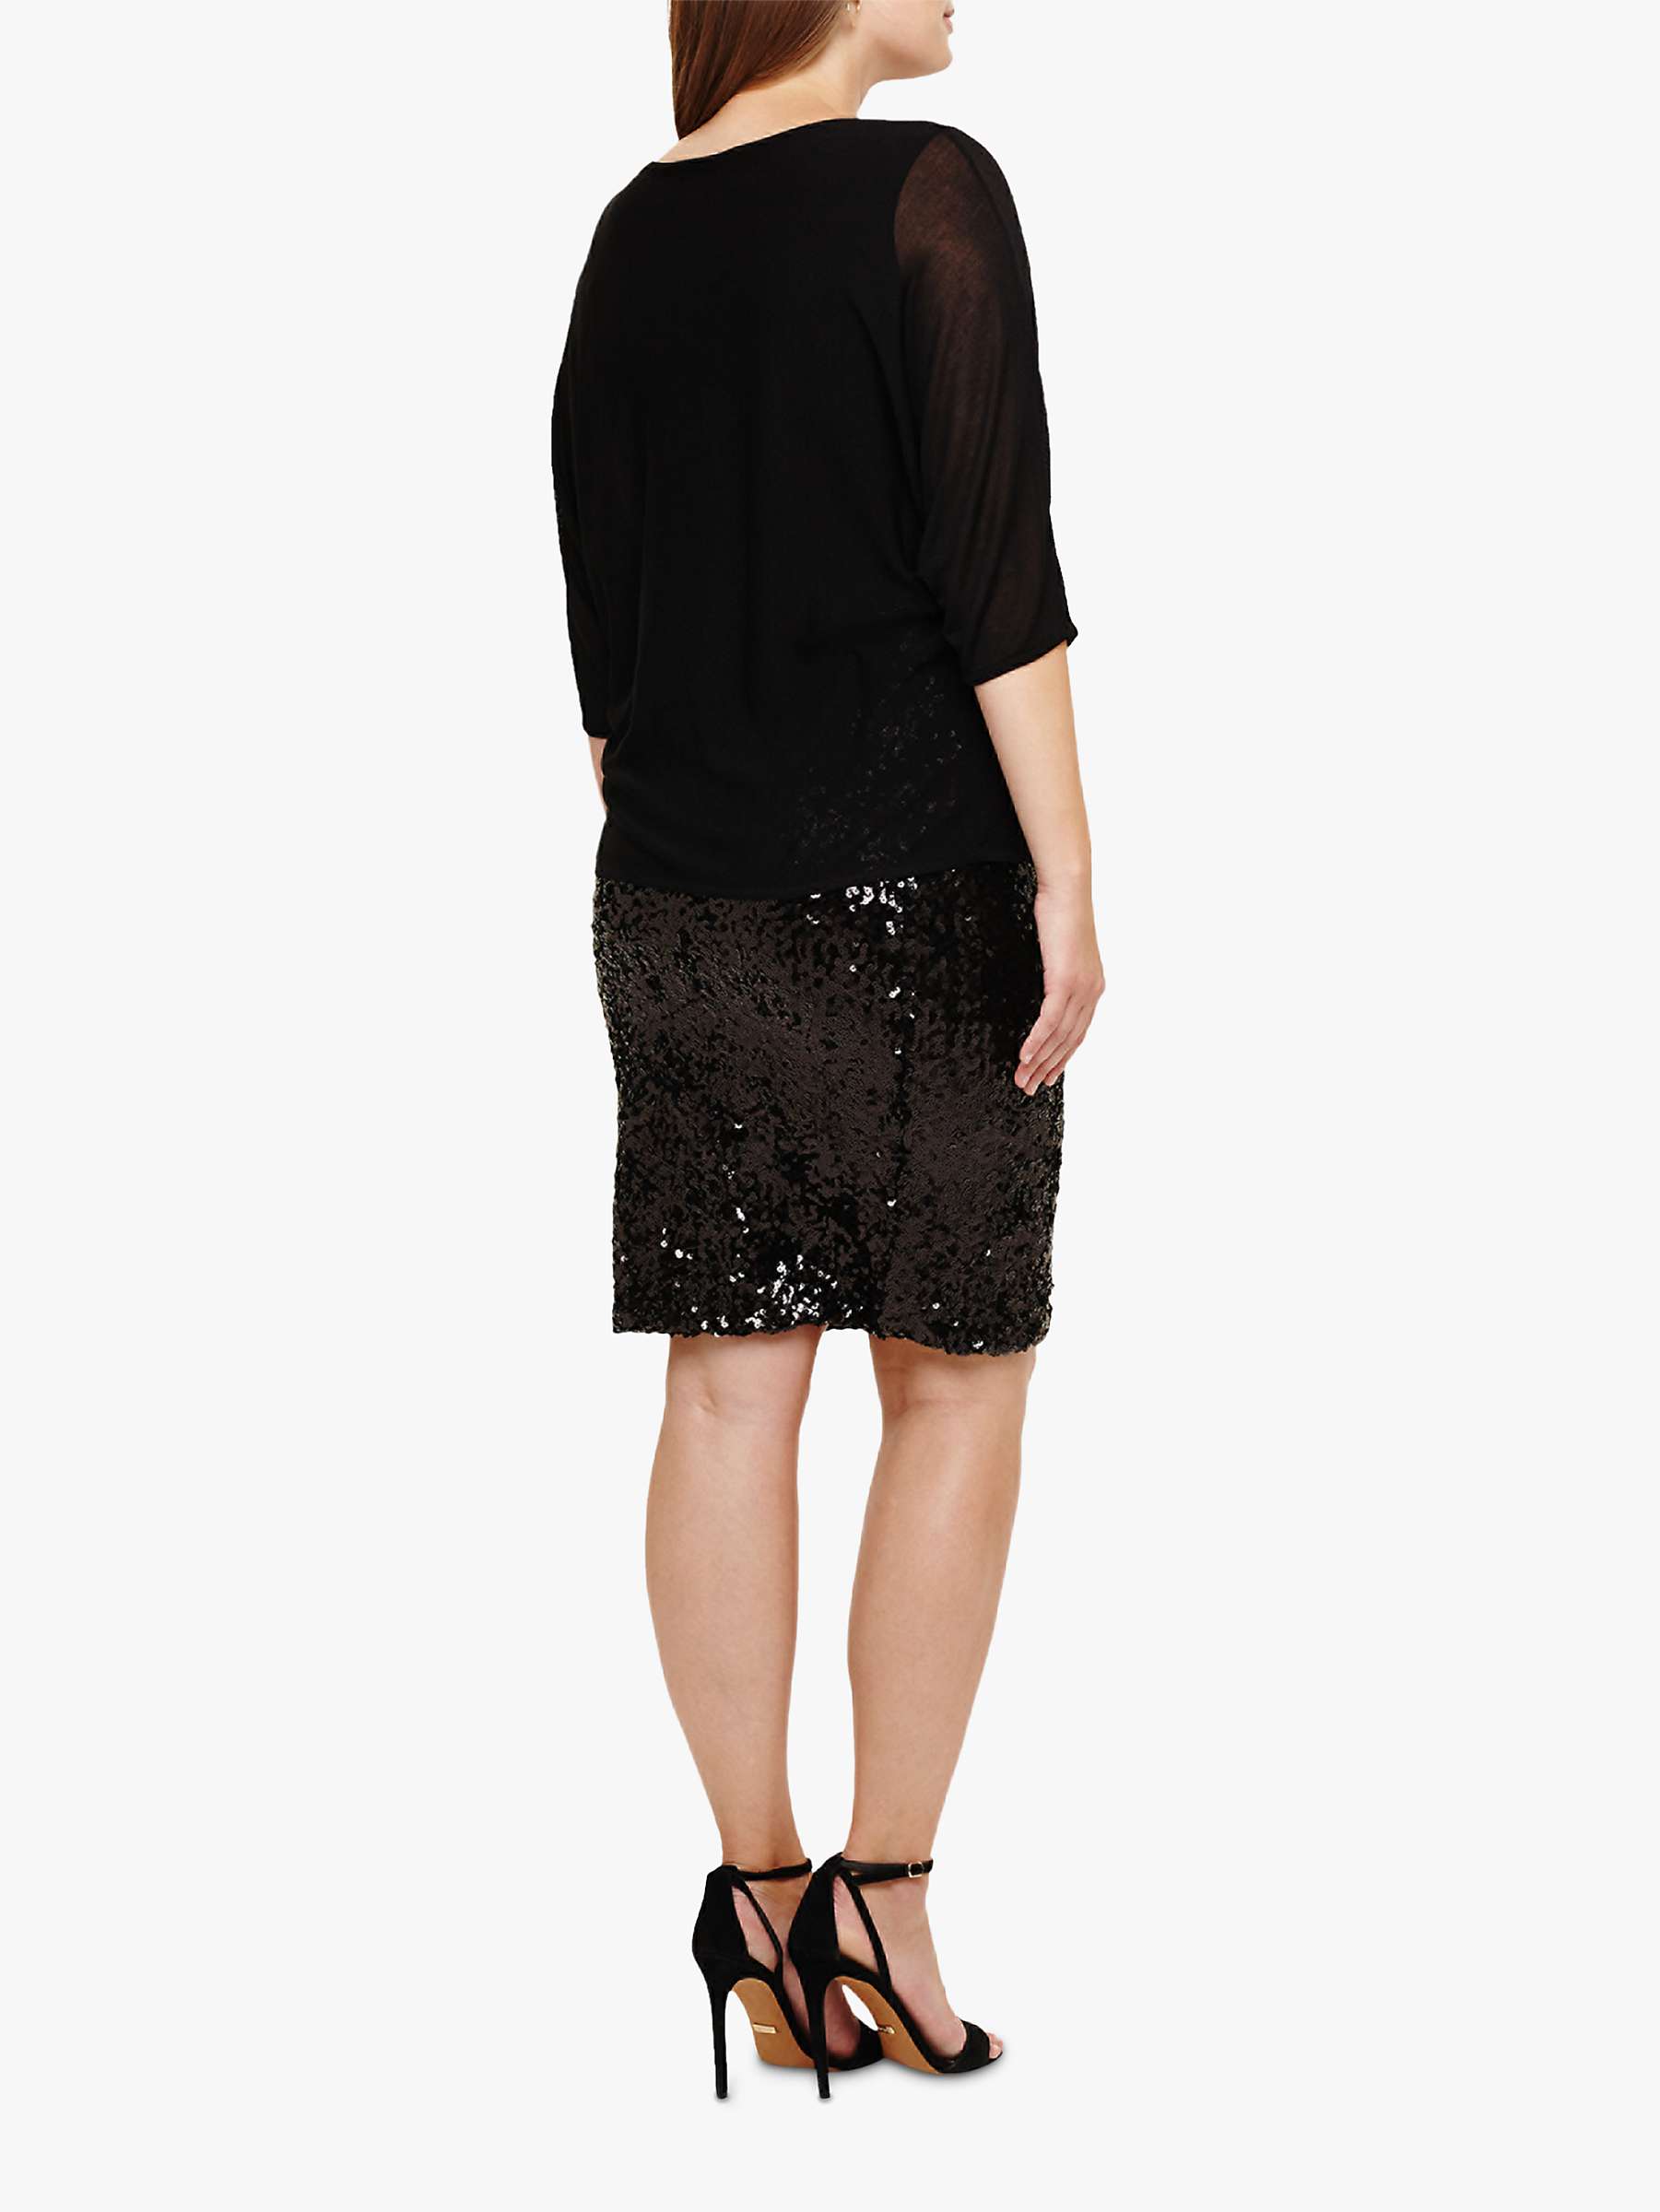 Buy Studio 8 Pixie Sequin Embellished Dress, Black Online at johnlewis.com